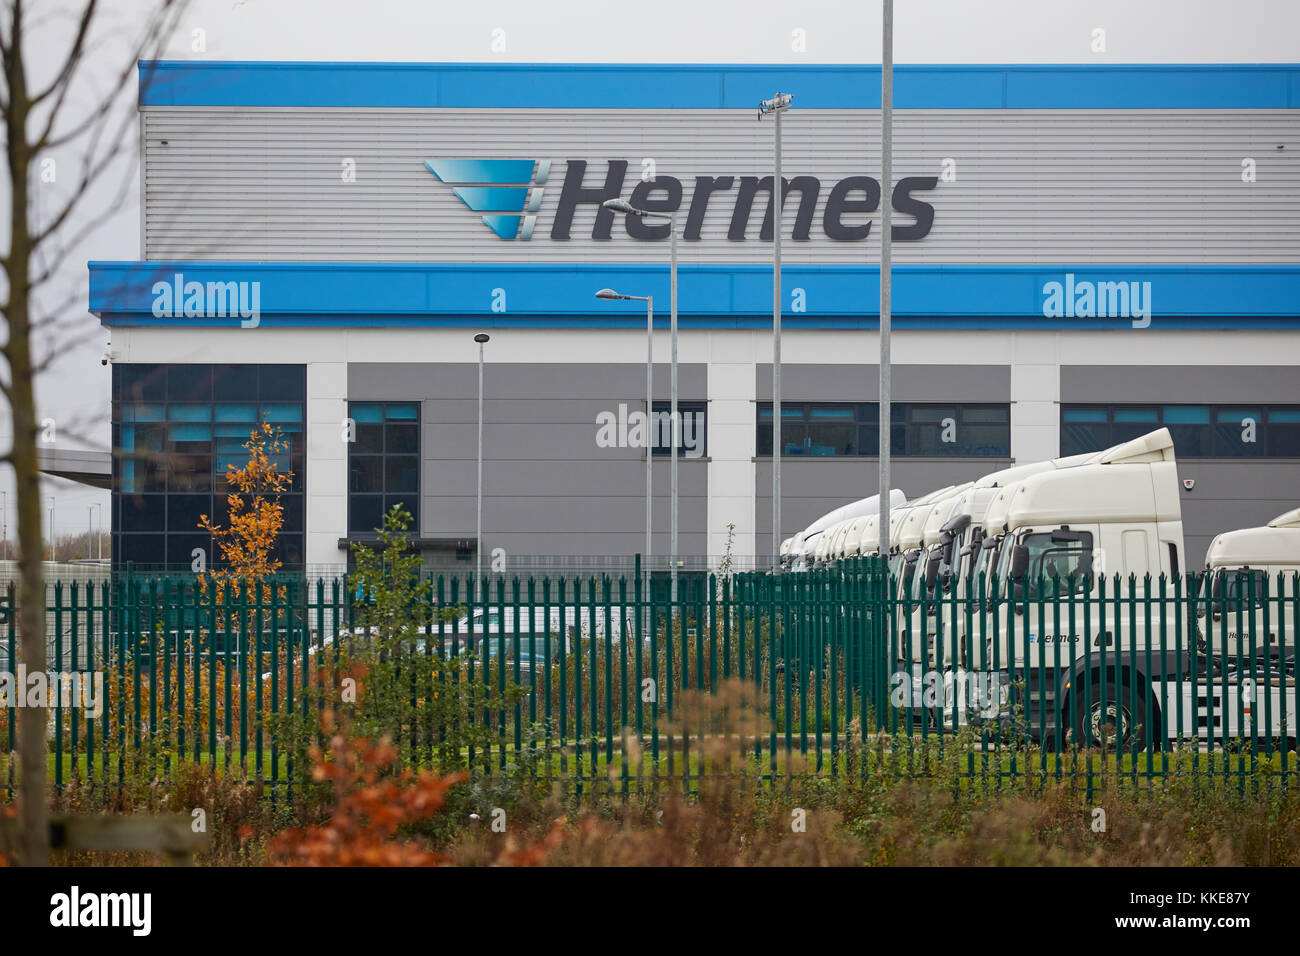 Hermes logistica immagini e fotografie stock ad alta risoluzione - Alamy